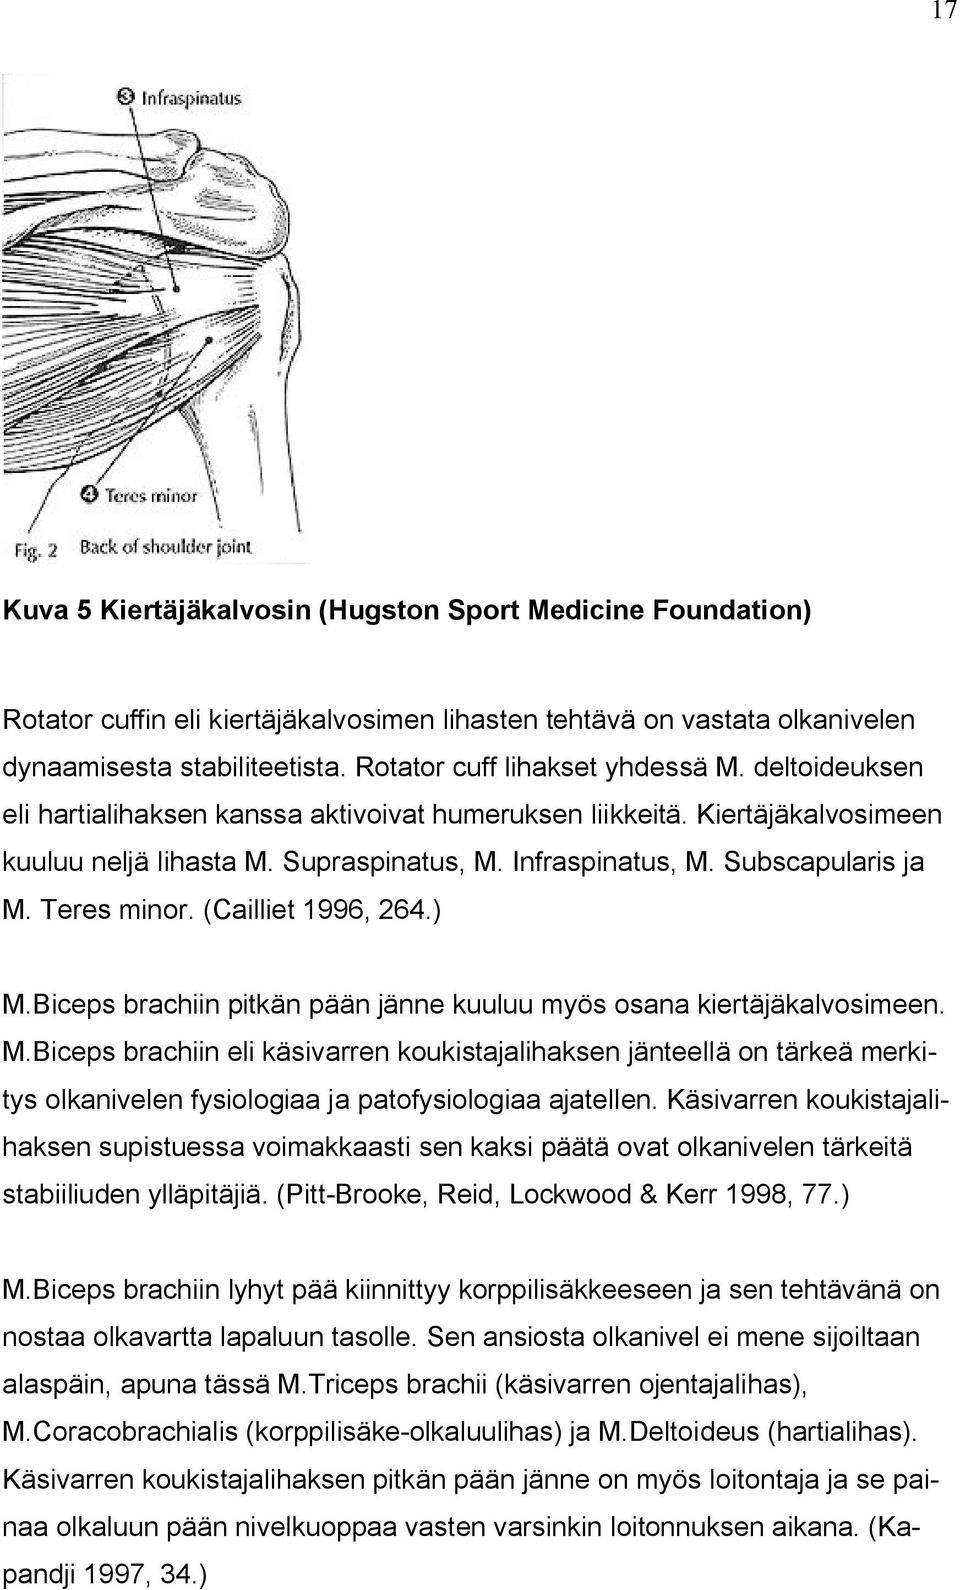 Subscapularis ja M. Teres minor. (Cailliet 1996, 264.) M.Biceps brachiin pitkän pään jänne kuuluu myös osana kiertäjäkalvosimeen. M.Biceps brachiin eli käsivarren koukistajalihaksen jänteellä on tärkeä merkitys olkanivelen fysiologiaa ja patofysiologiaa ajatellen.